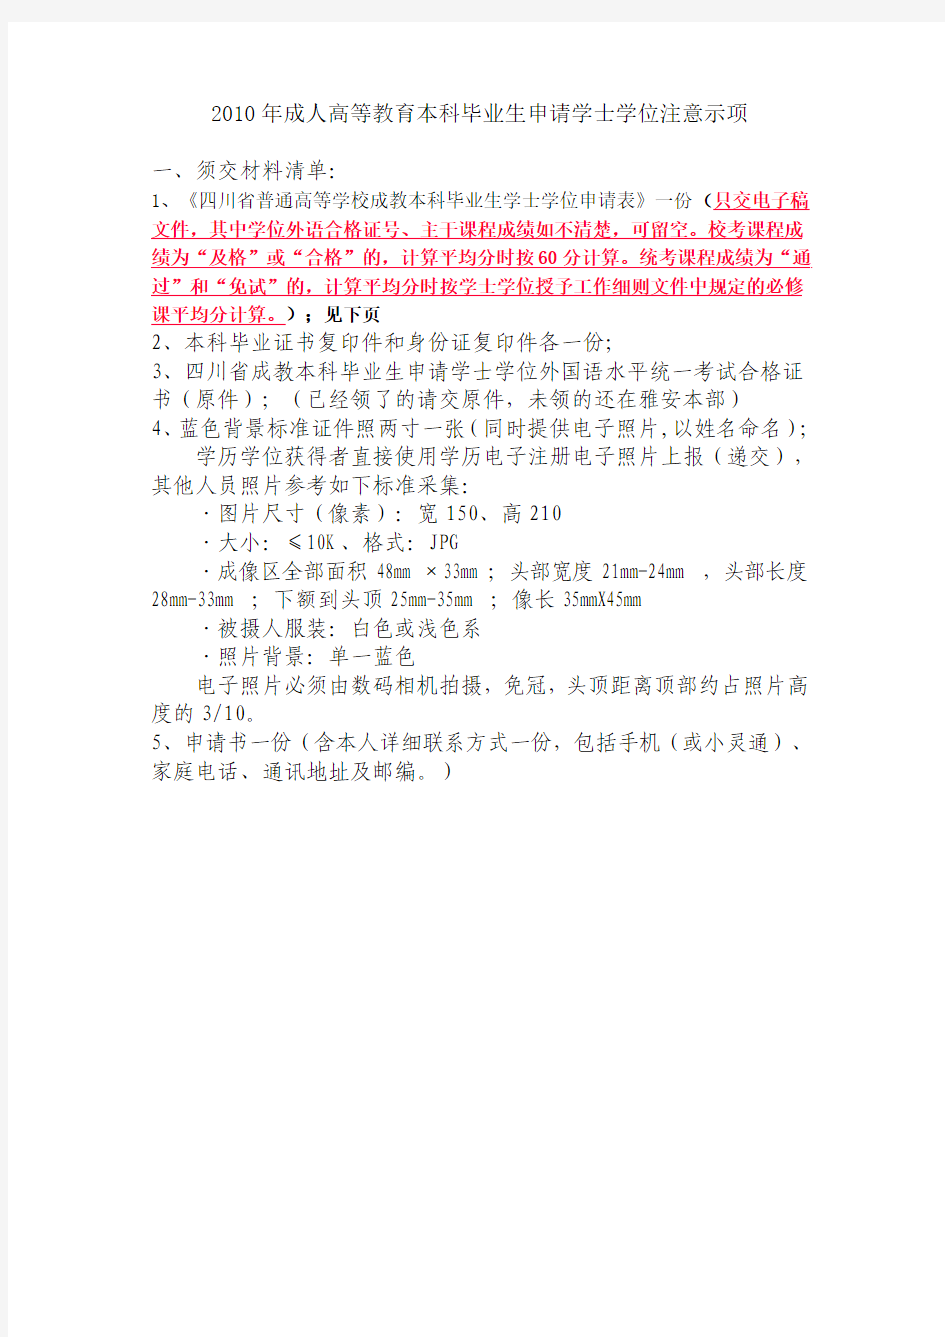 四川农业大学自考申请学位需交材料清单